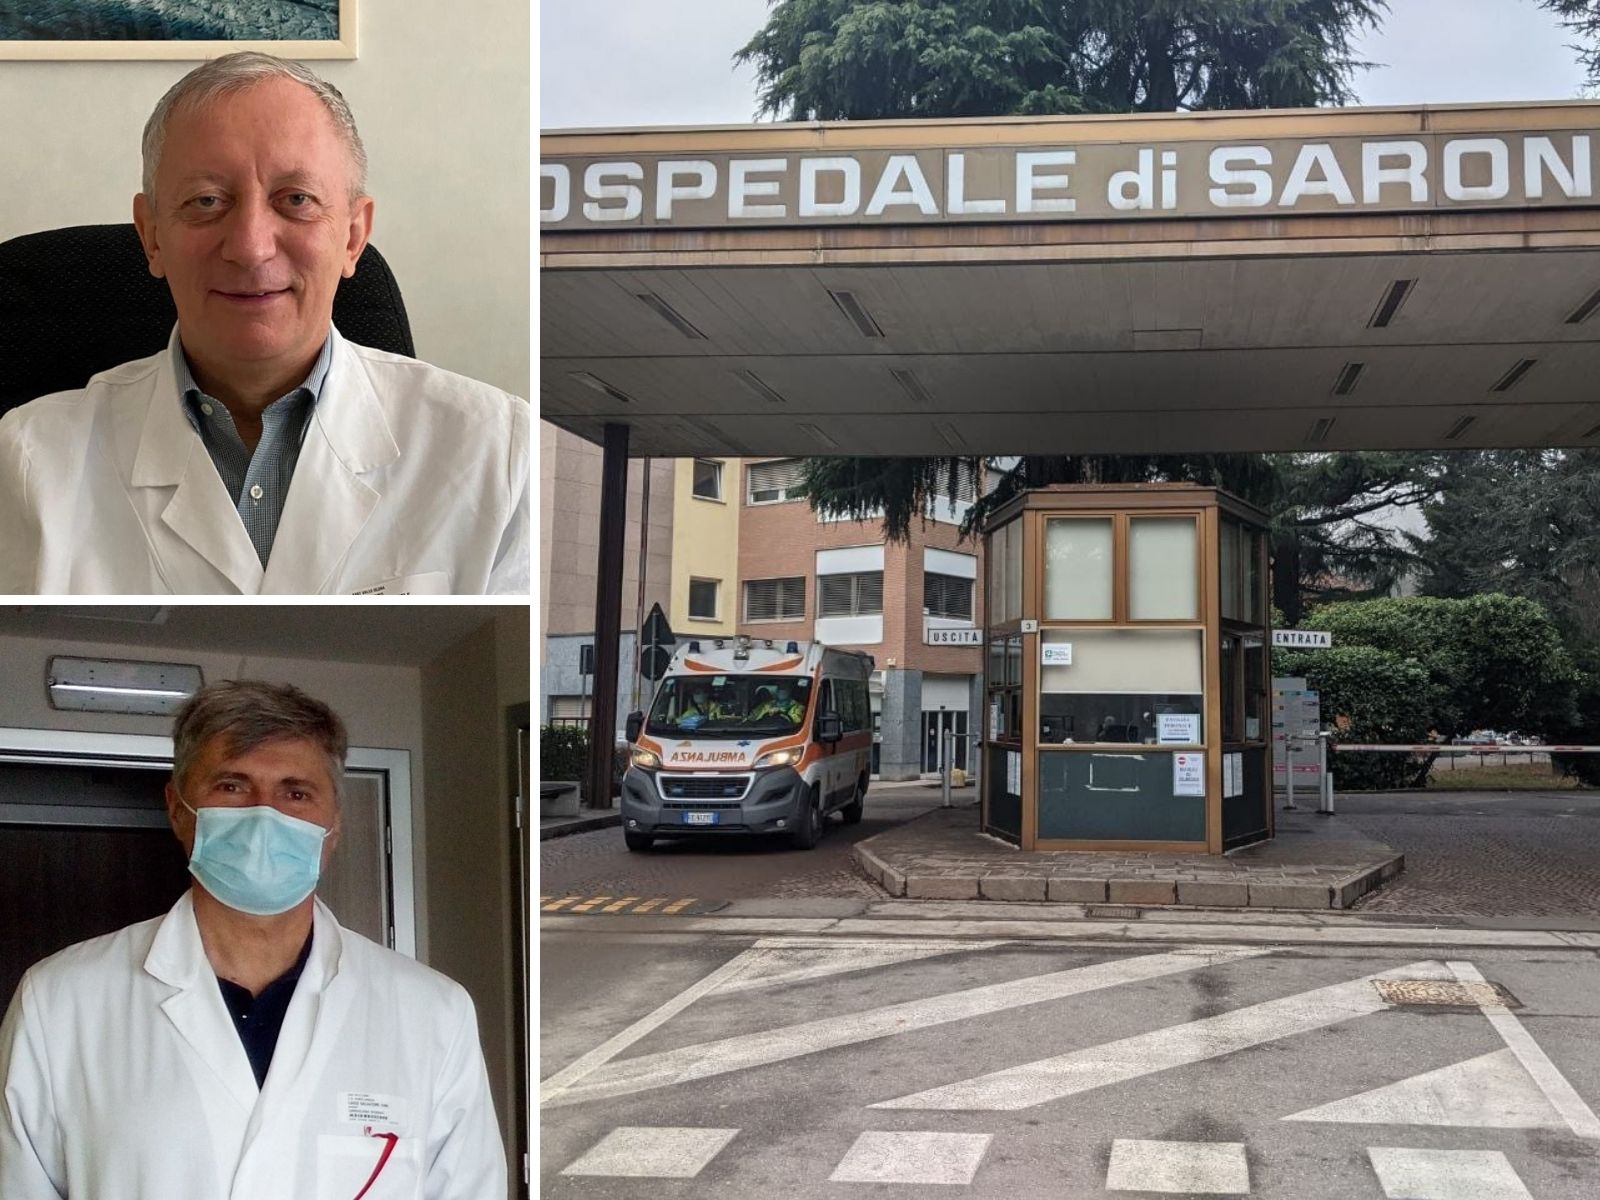 Ospedale Saronno, fino al 30 novembre saranno offerti gratuitamente check-up cardiologici post-infarto